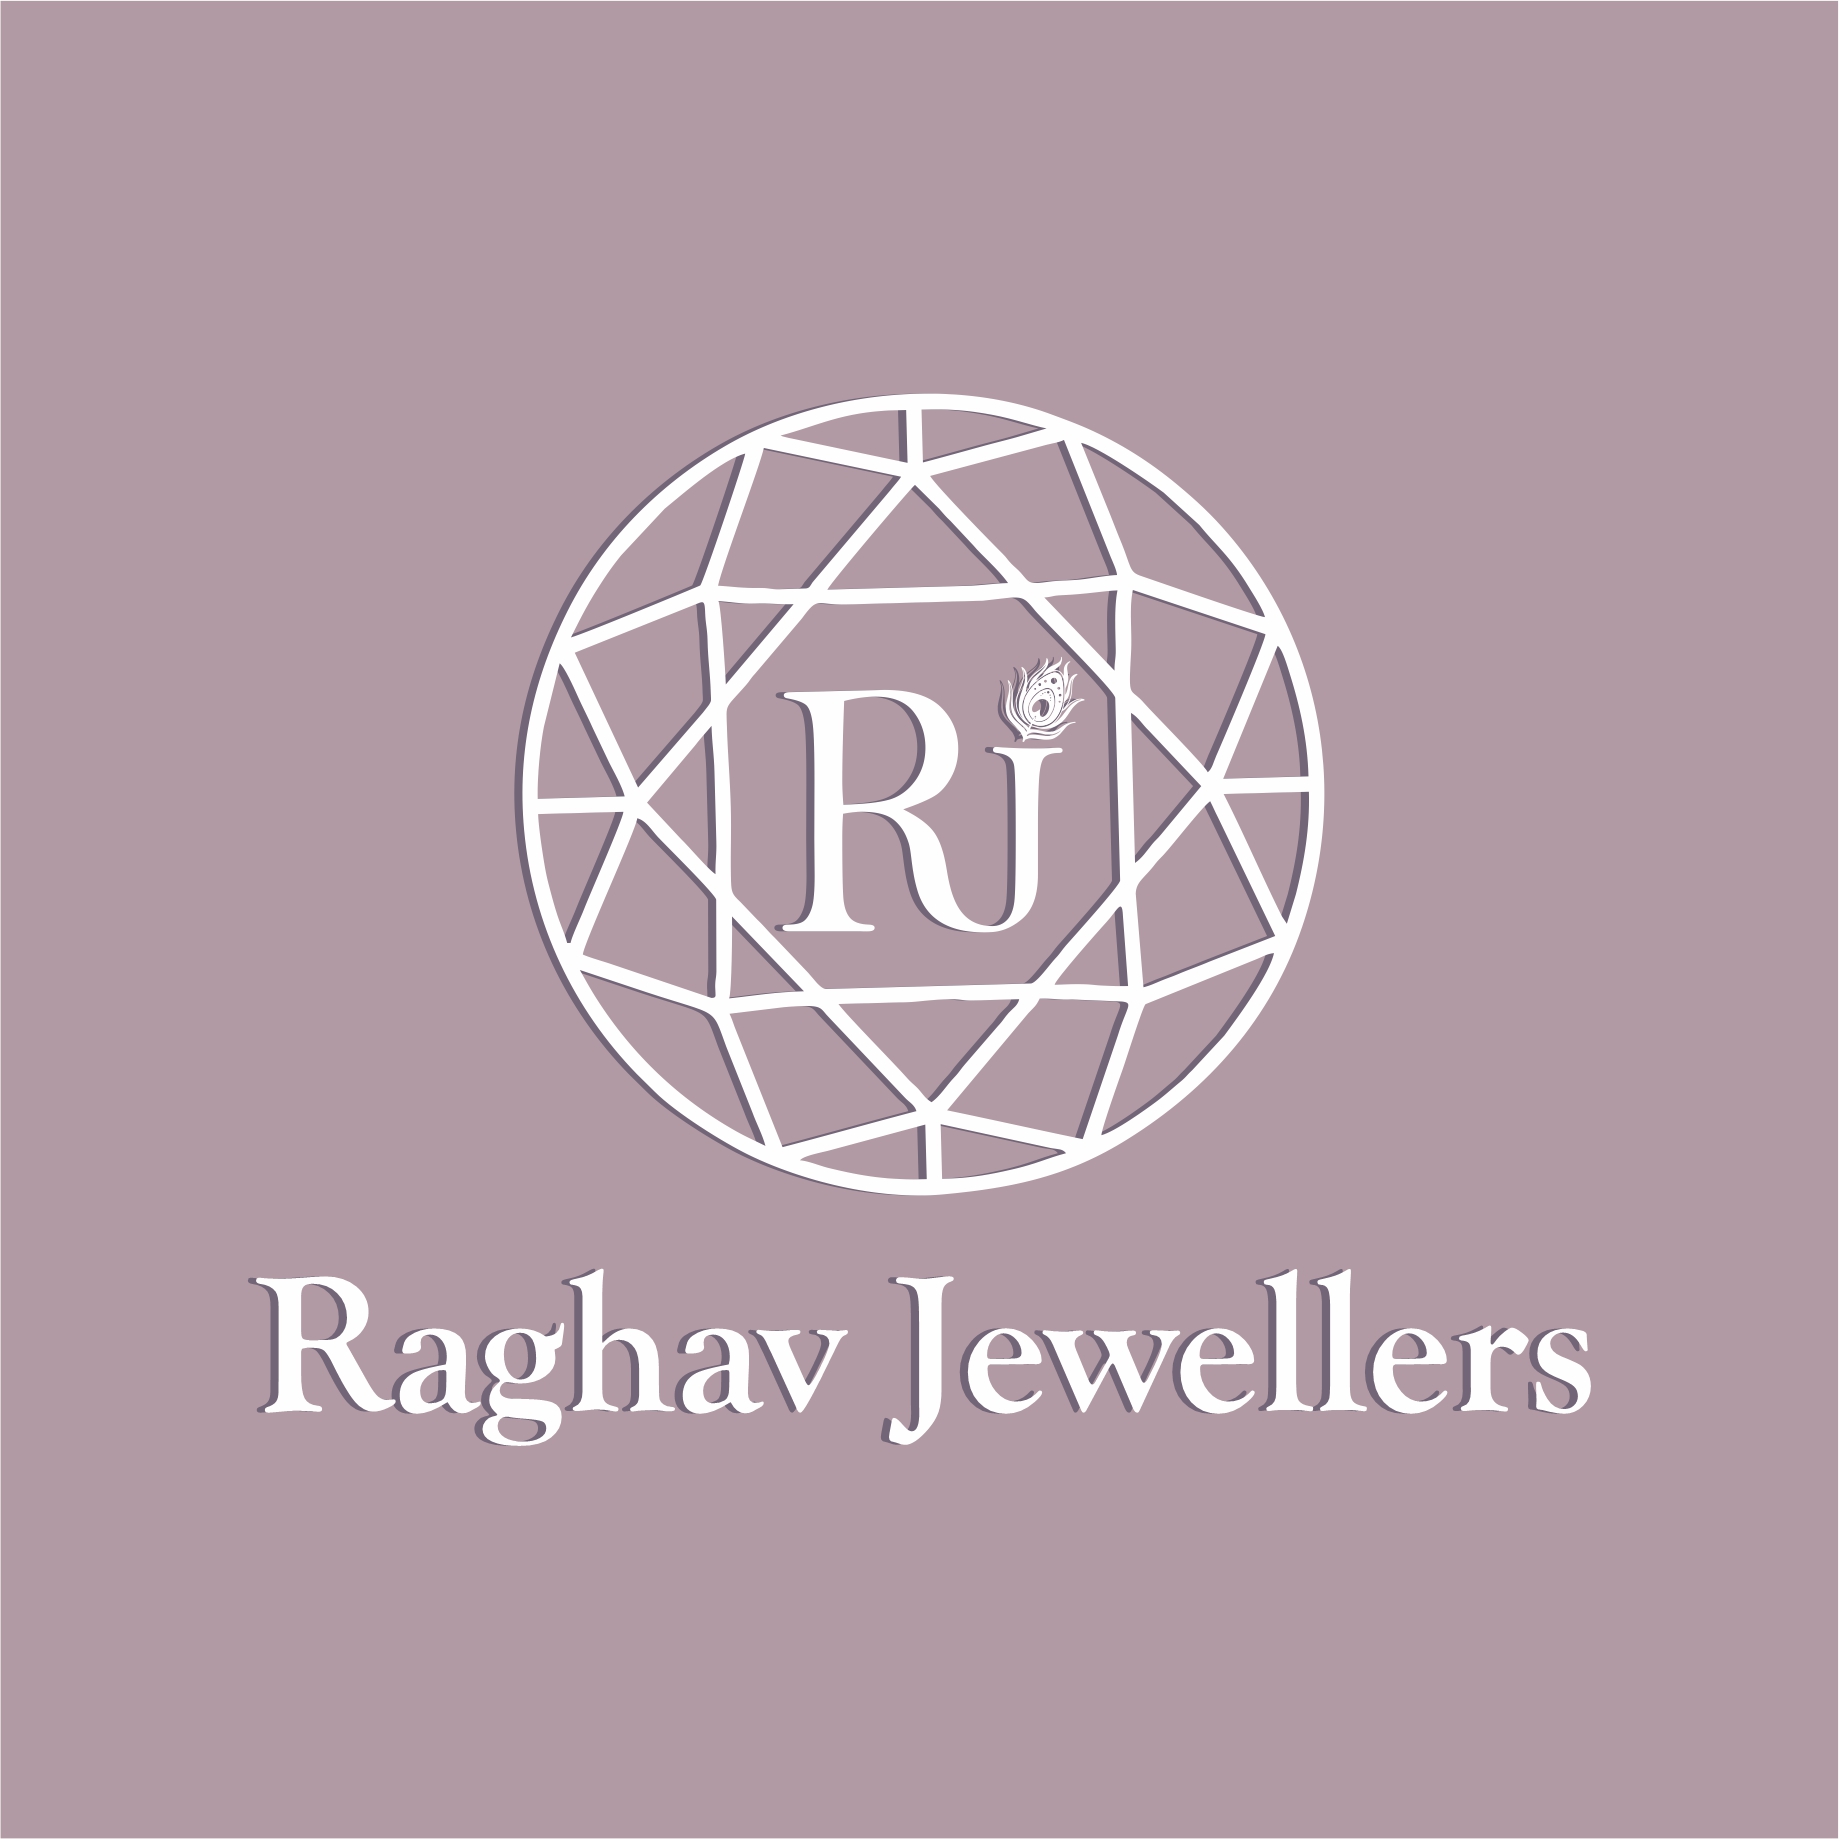 RajBhar SaHeb (@rajbharsaheb) posted on Instagram: “Rajbhar's Logo  RajbharSaheb #rajbhar #rajbharsaheb #rajbharinindia #rajbhardw… |  Instagram, ? logo, 10 things